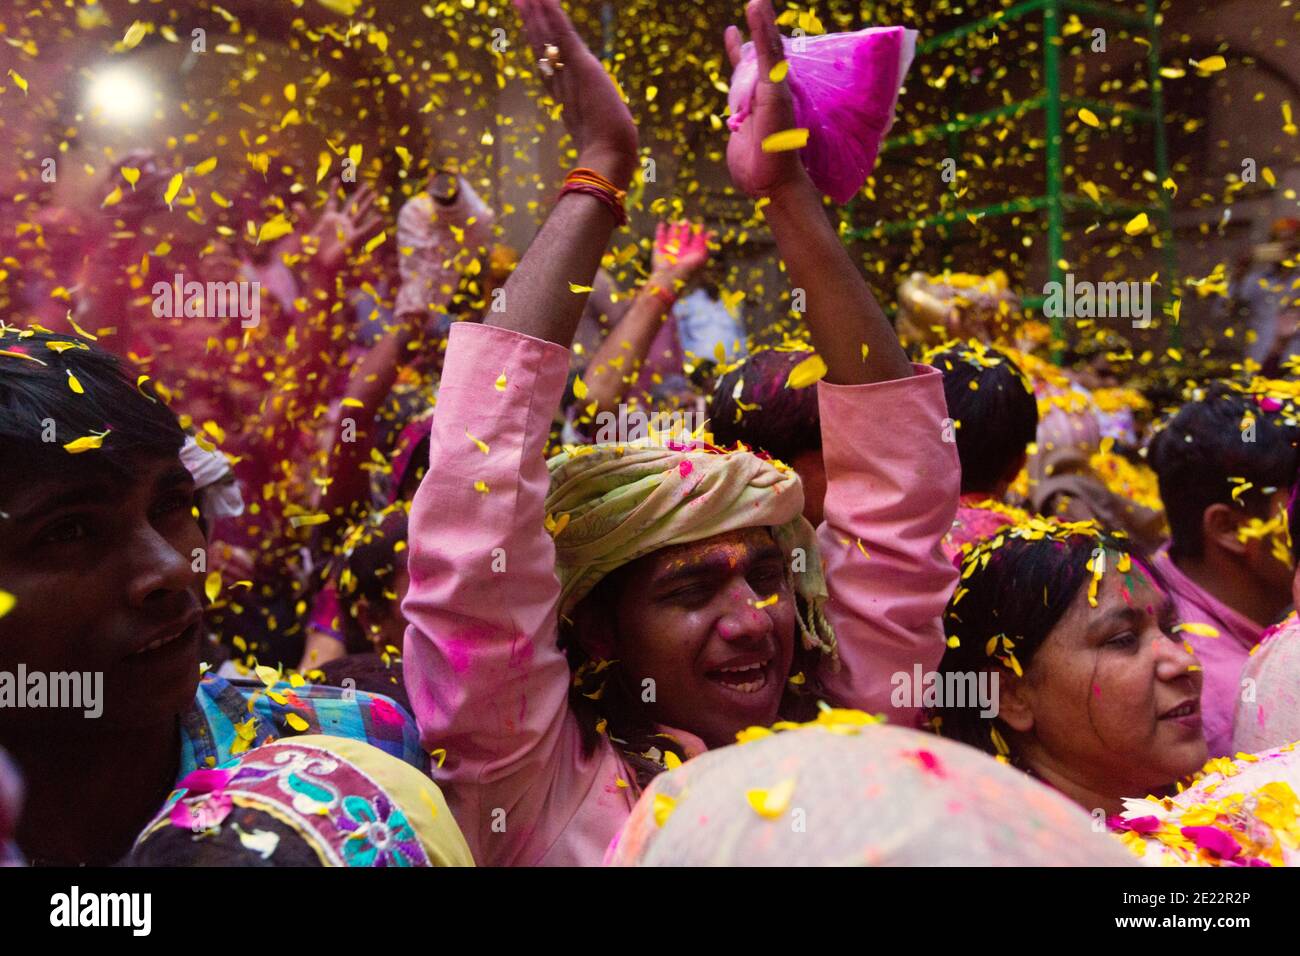 Eifrige Anhänger feiern Phoolon Wali Holi, ein holi mit Blumenblättern, die am Banke Bihari Tempel gehalten werden. Bei dieser einzigartigen Feier werden Blütenblätter f geworfen Stockfoto